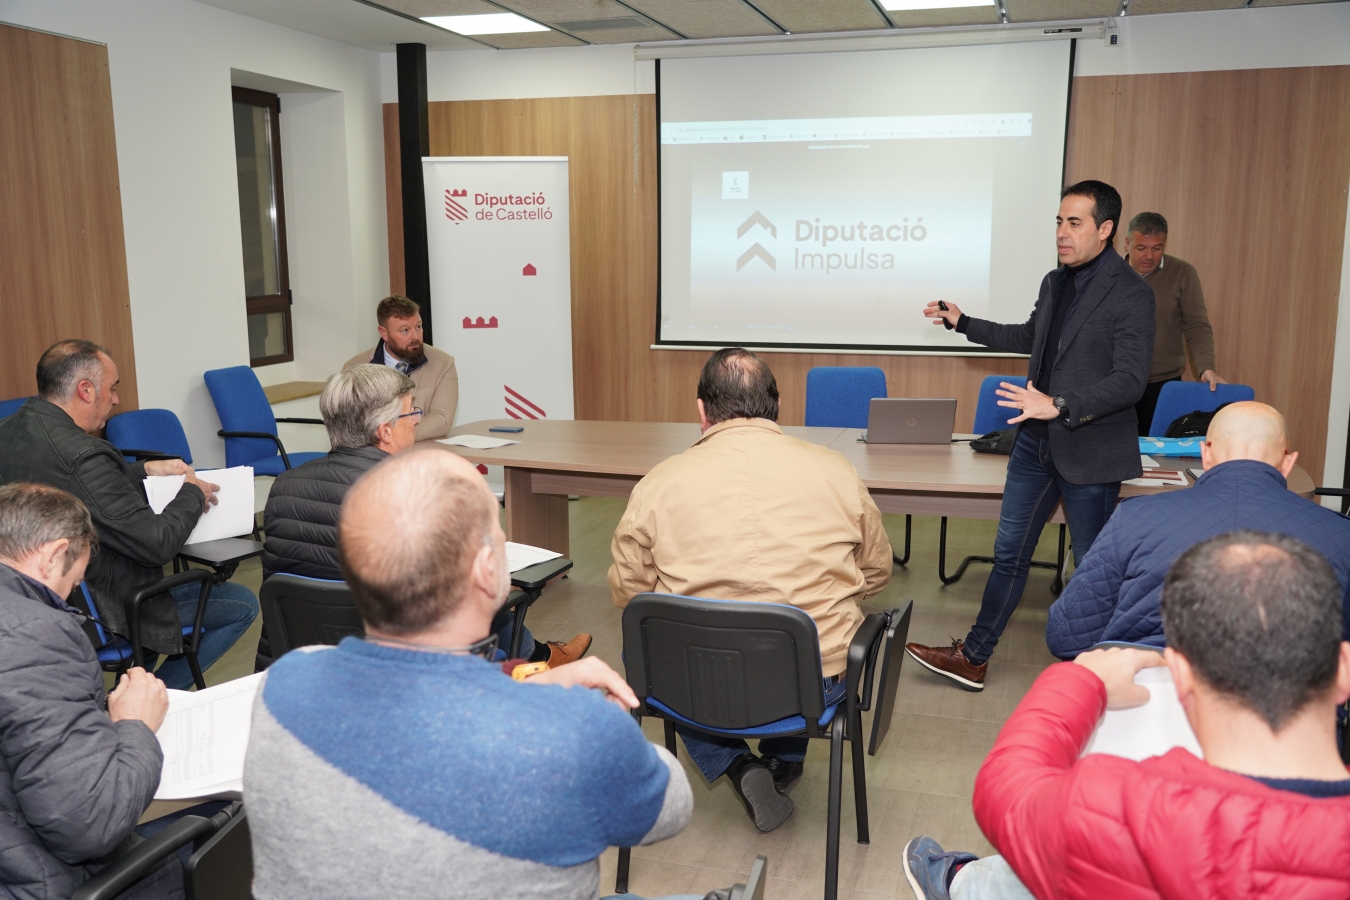 La Diputación de Castellón inicia una ronda de reuniones con alcaldes para explicar el Plan Diputació Impulsa y garantiza el contacto en primera persona